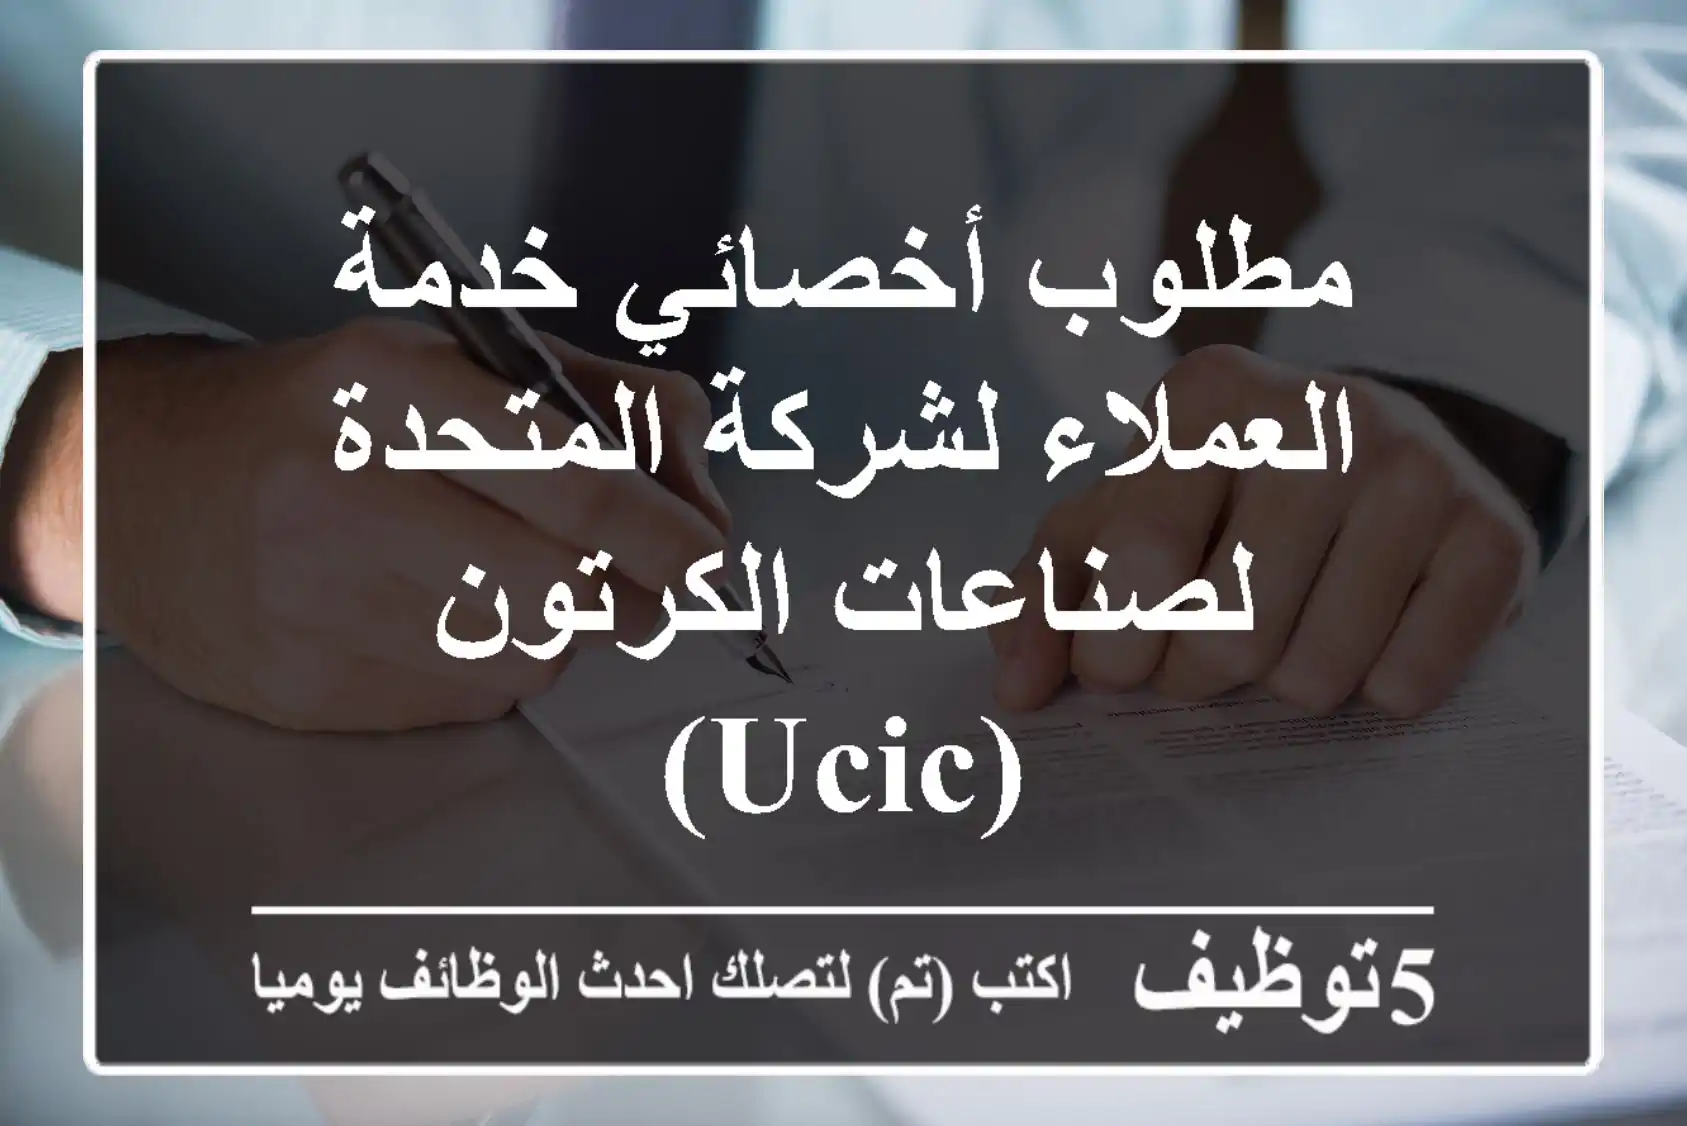 مطلوب أخصائي خدمة العملاء لشركة المتحدة لصناعات الكرتون (UCIC)